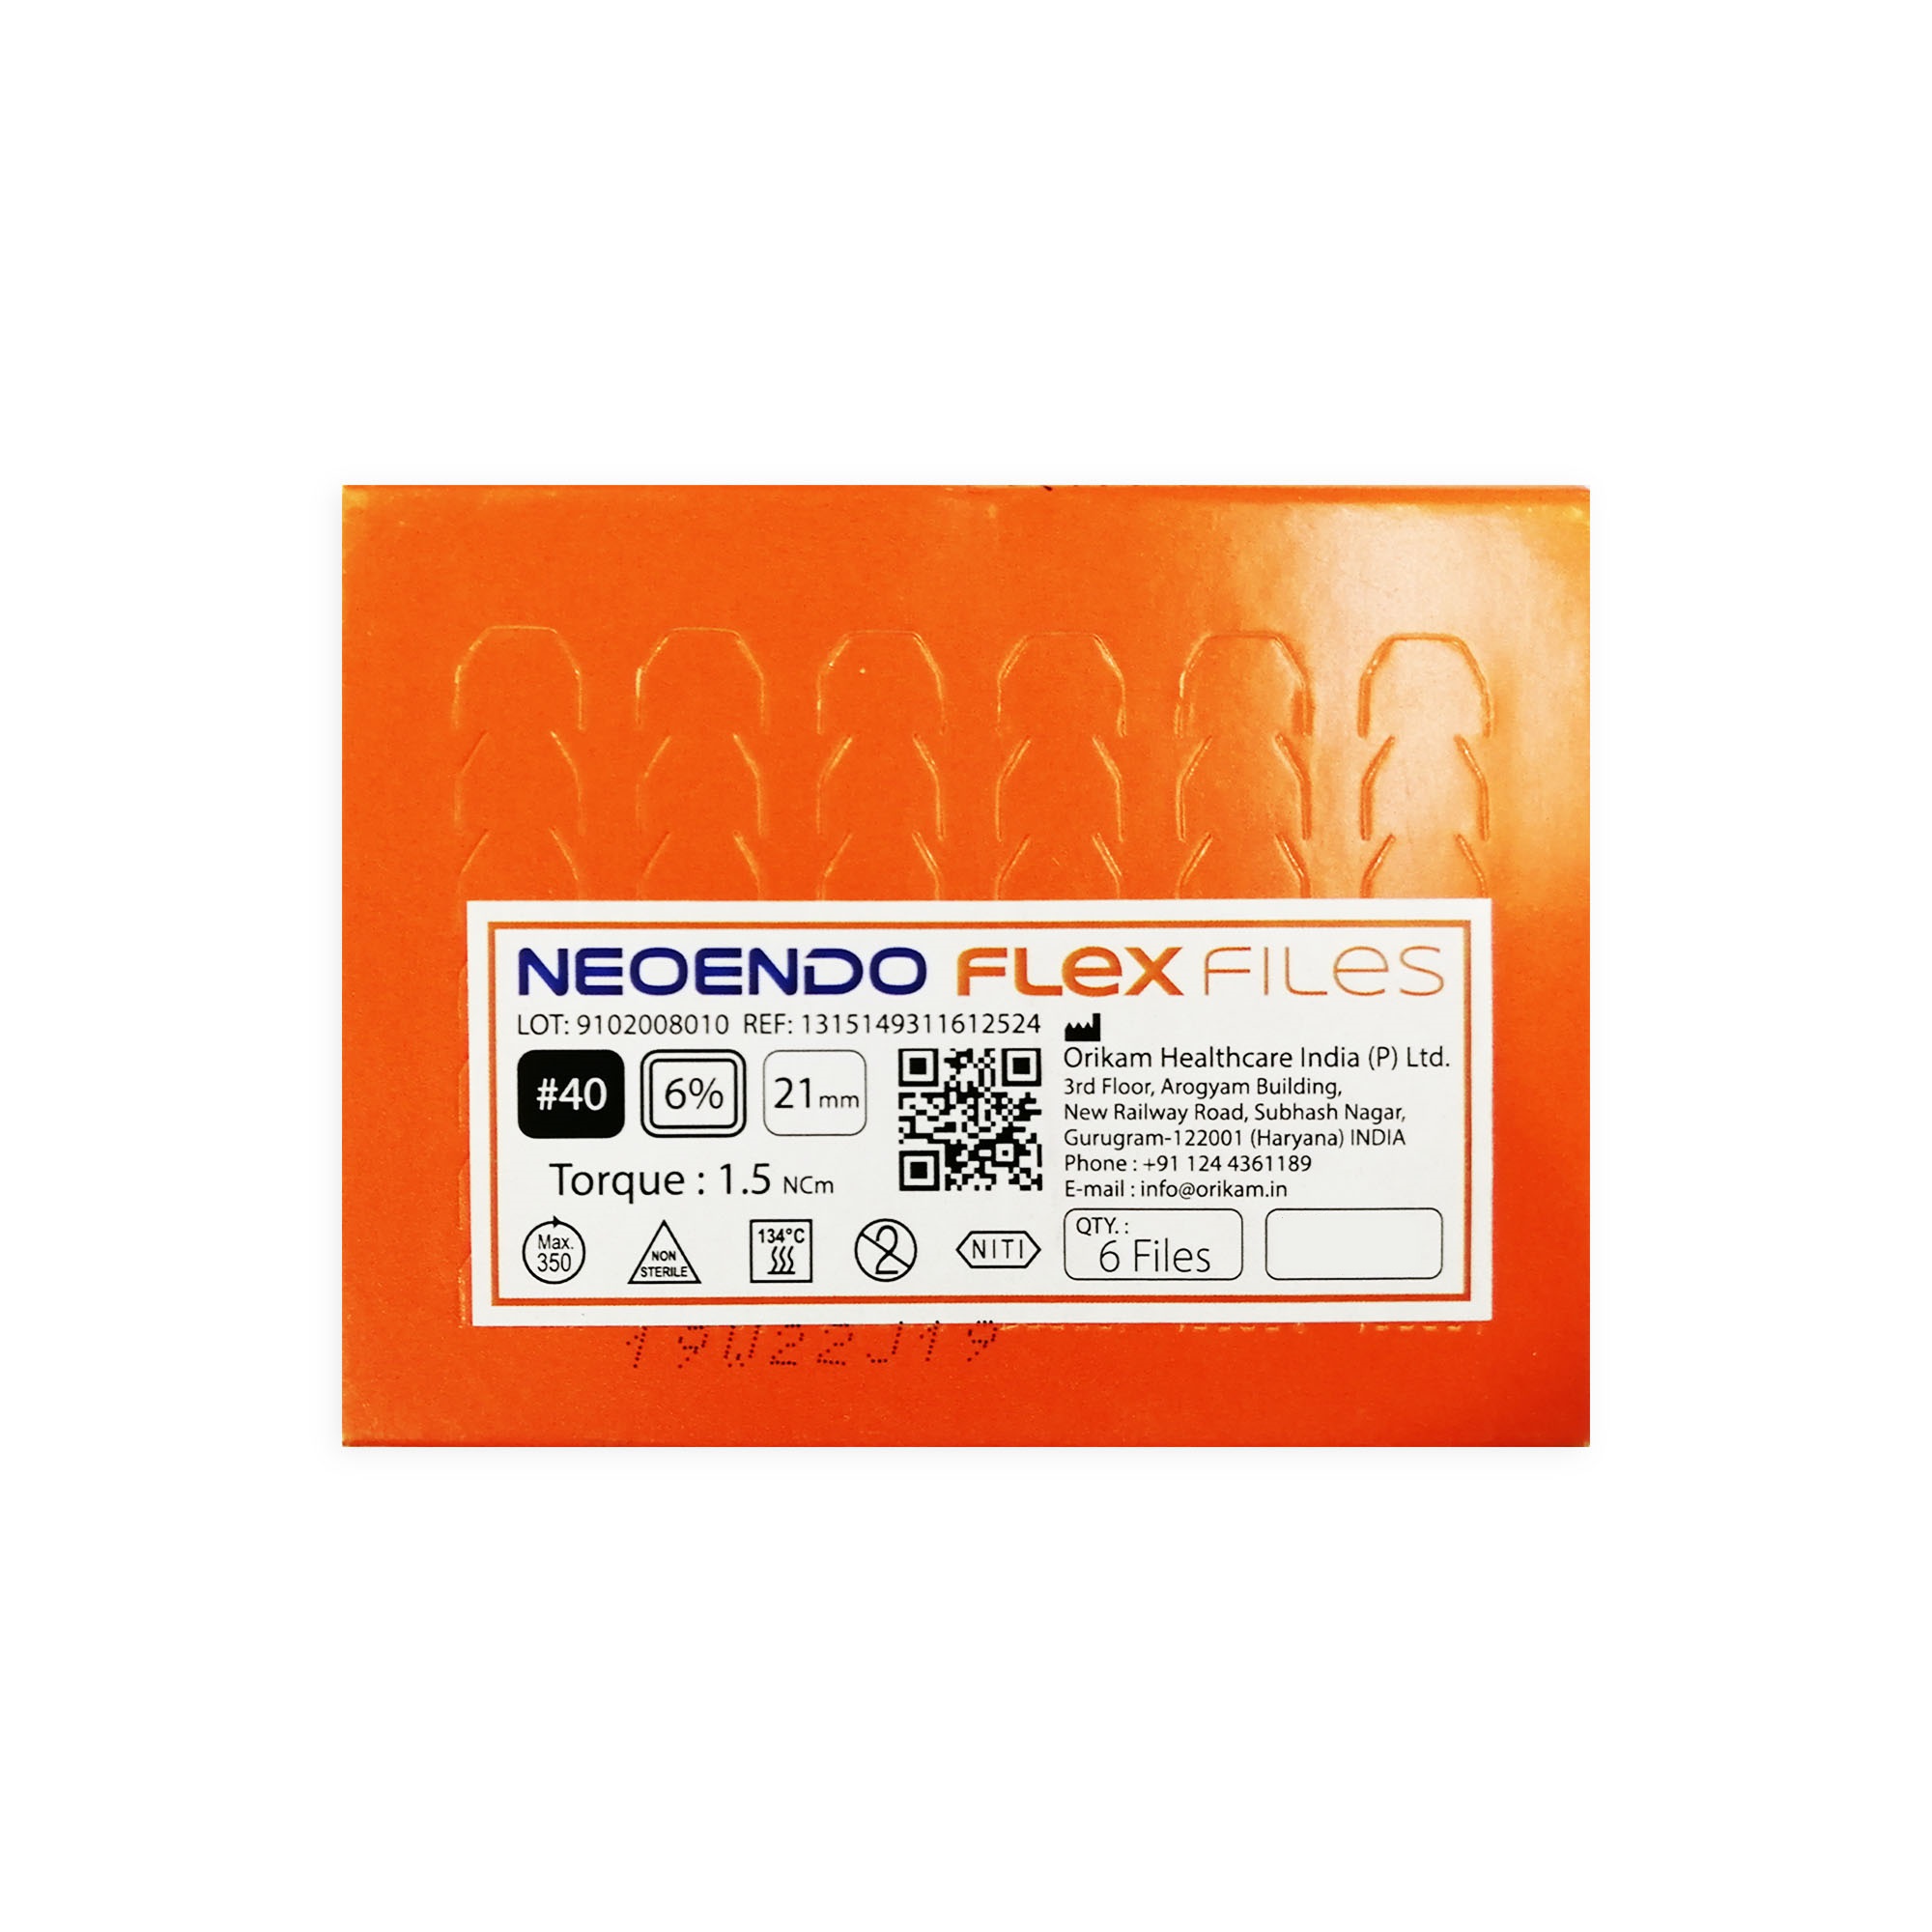 NeoEndo Flex Files 21mm 20/4 Endo Rotary Files